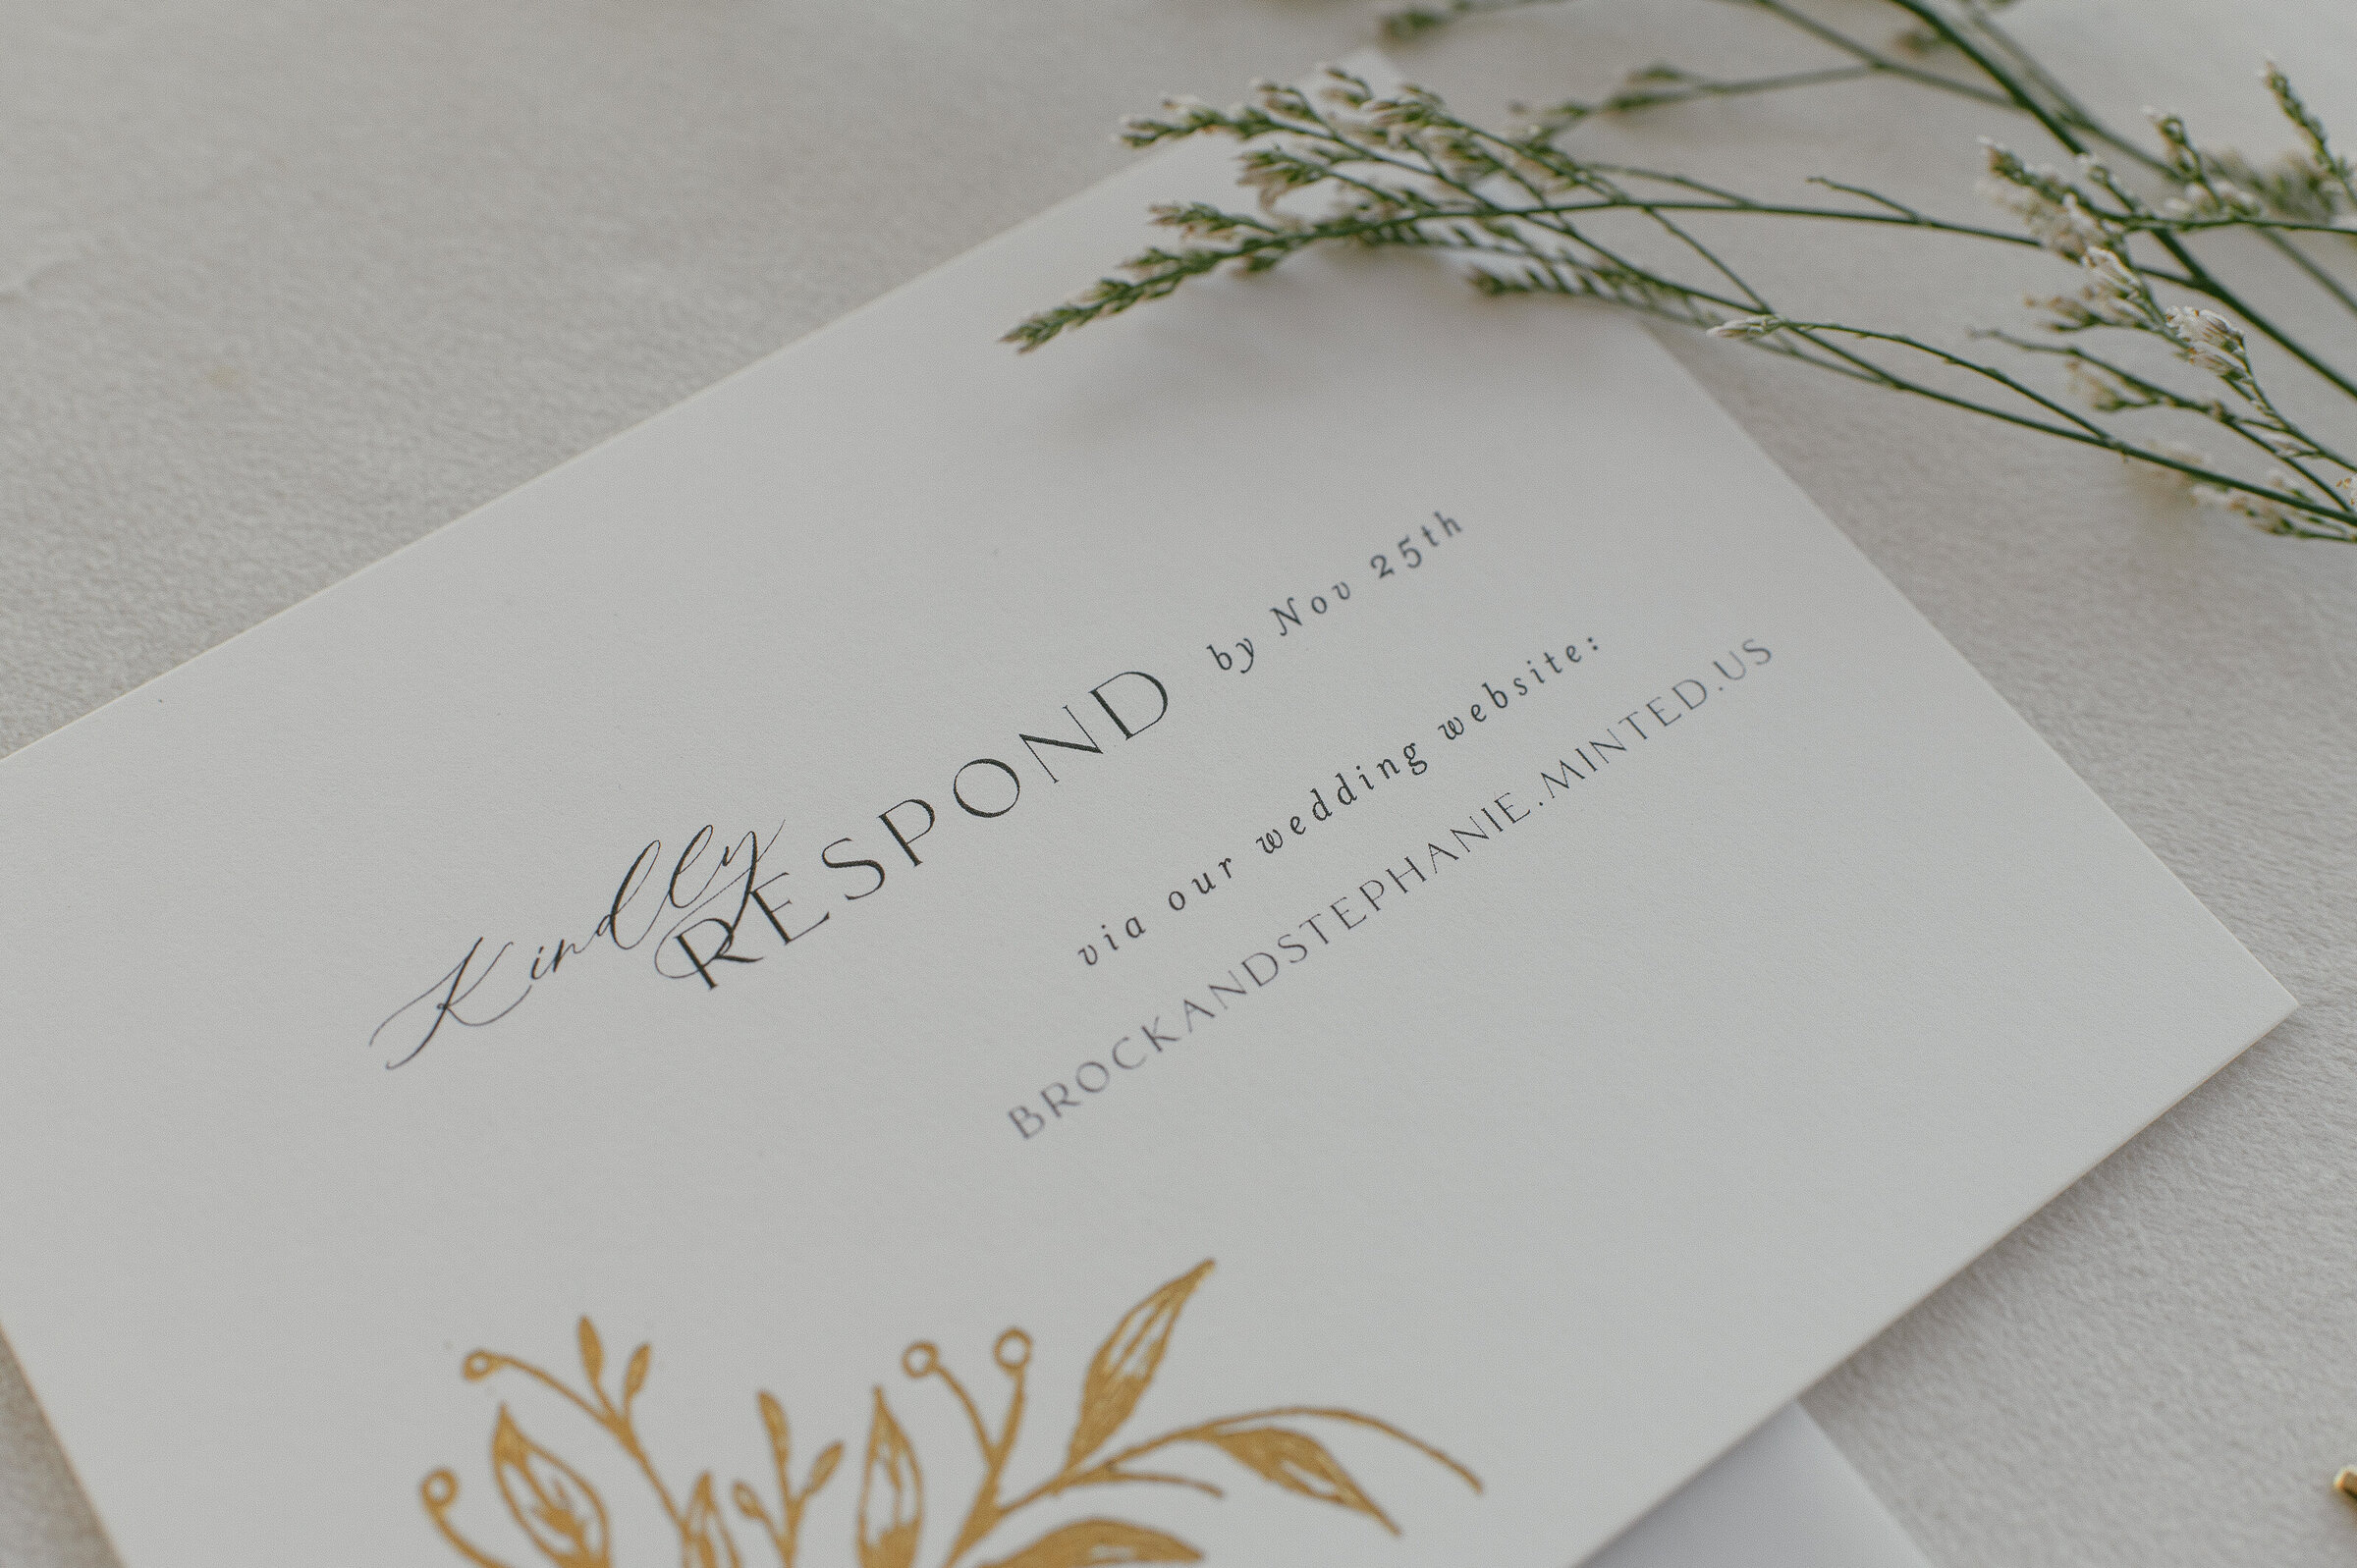 RSVP card with gold leaf design for wedding